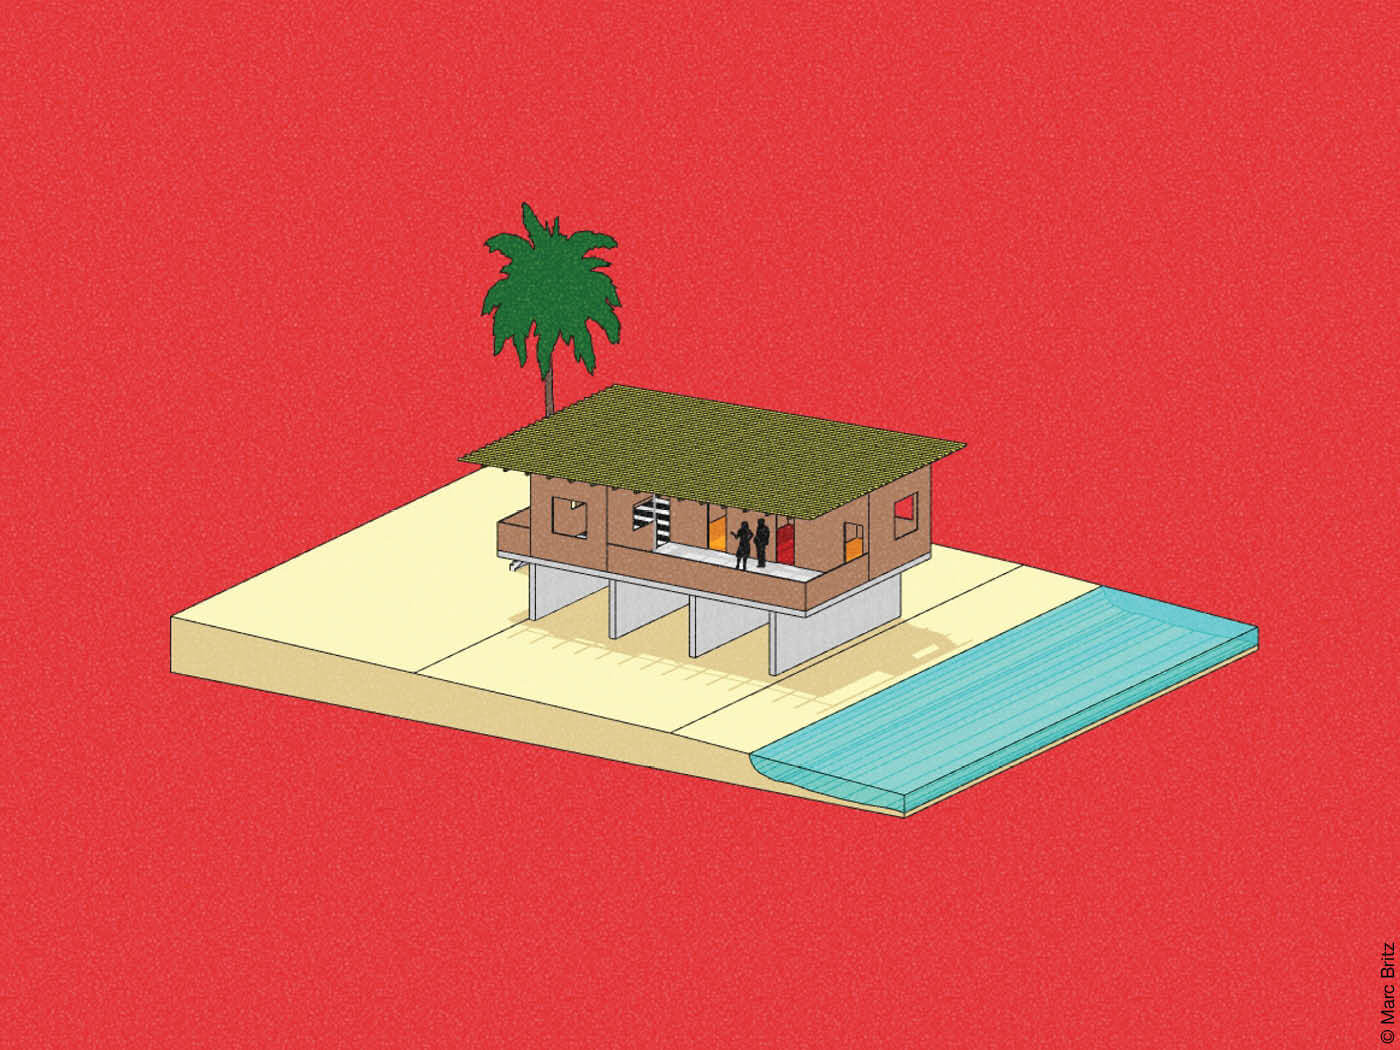 Modell eines Hauses auf dem Strand am Meer